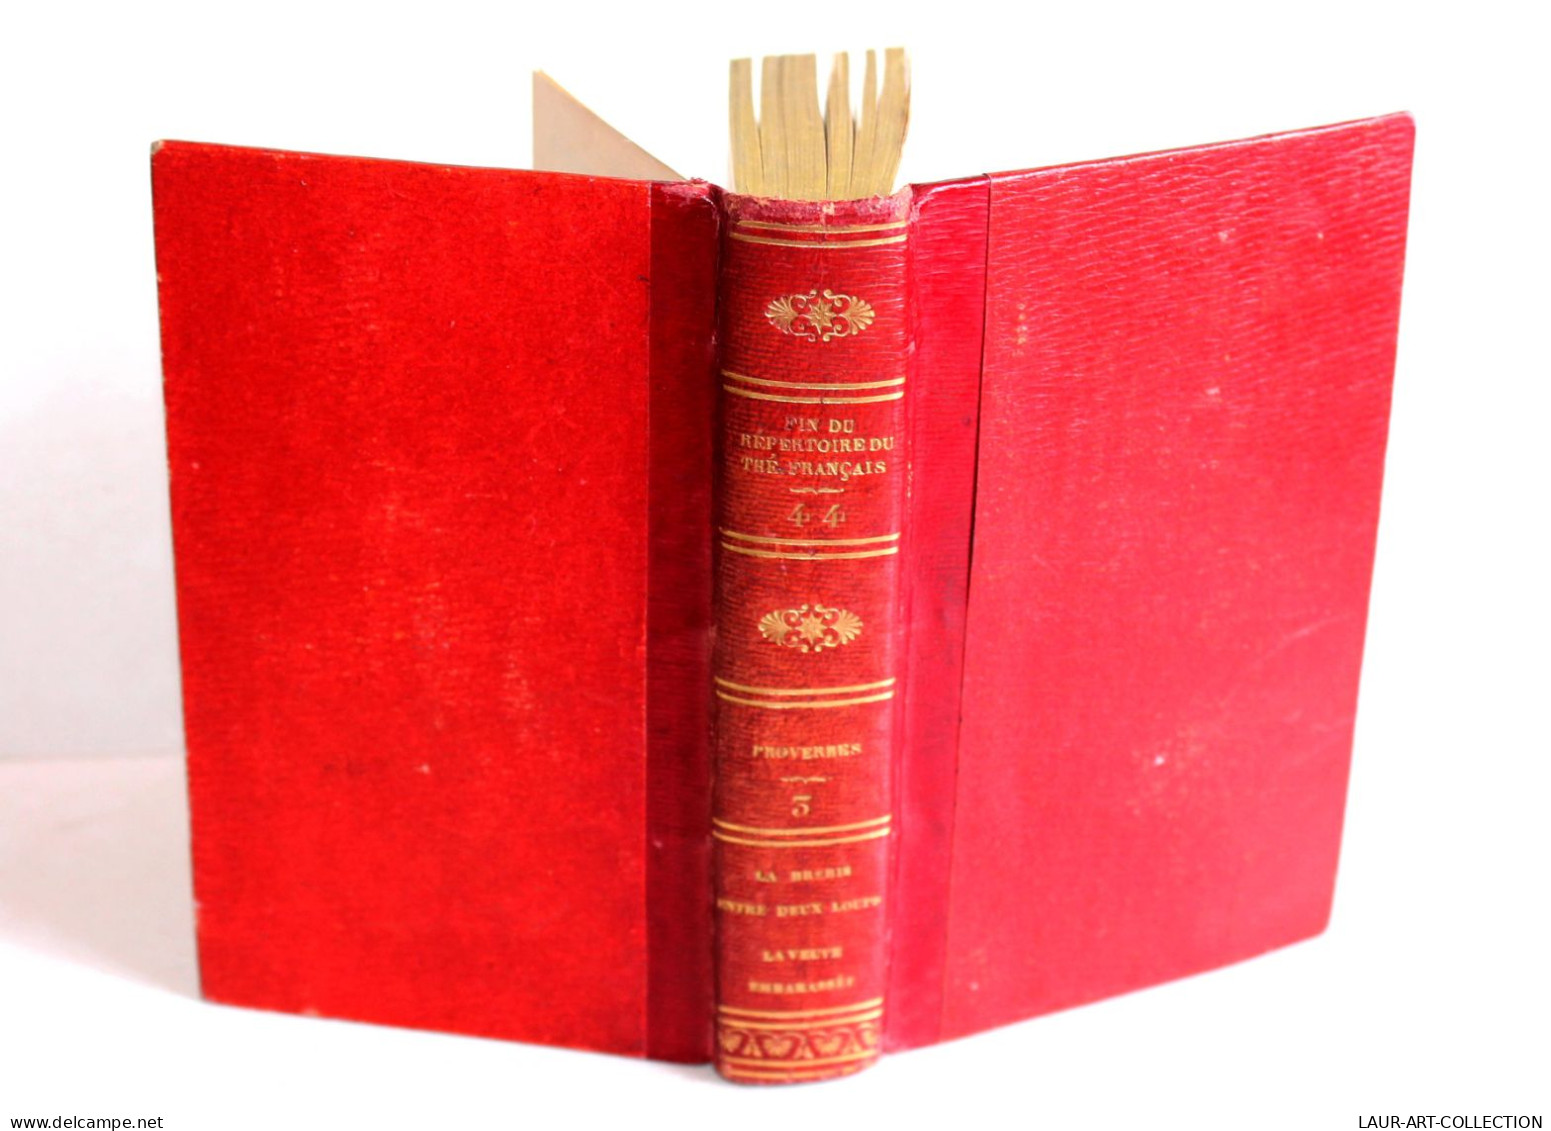 FIN DU REPERTOIRE DU THEATRE FRANCAIS Par LEPEINTRE PROVERBES TOME III 1824 DABO / LIVRE ANCIEN XIXe SIECLE (1803.252) - Französische Autoren